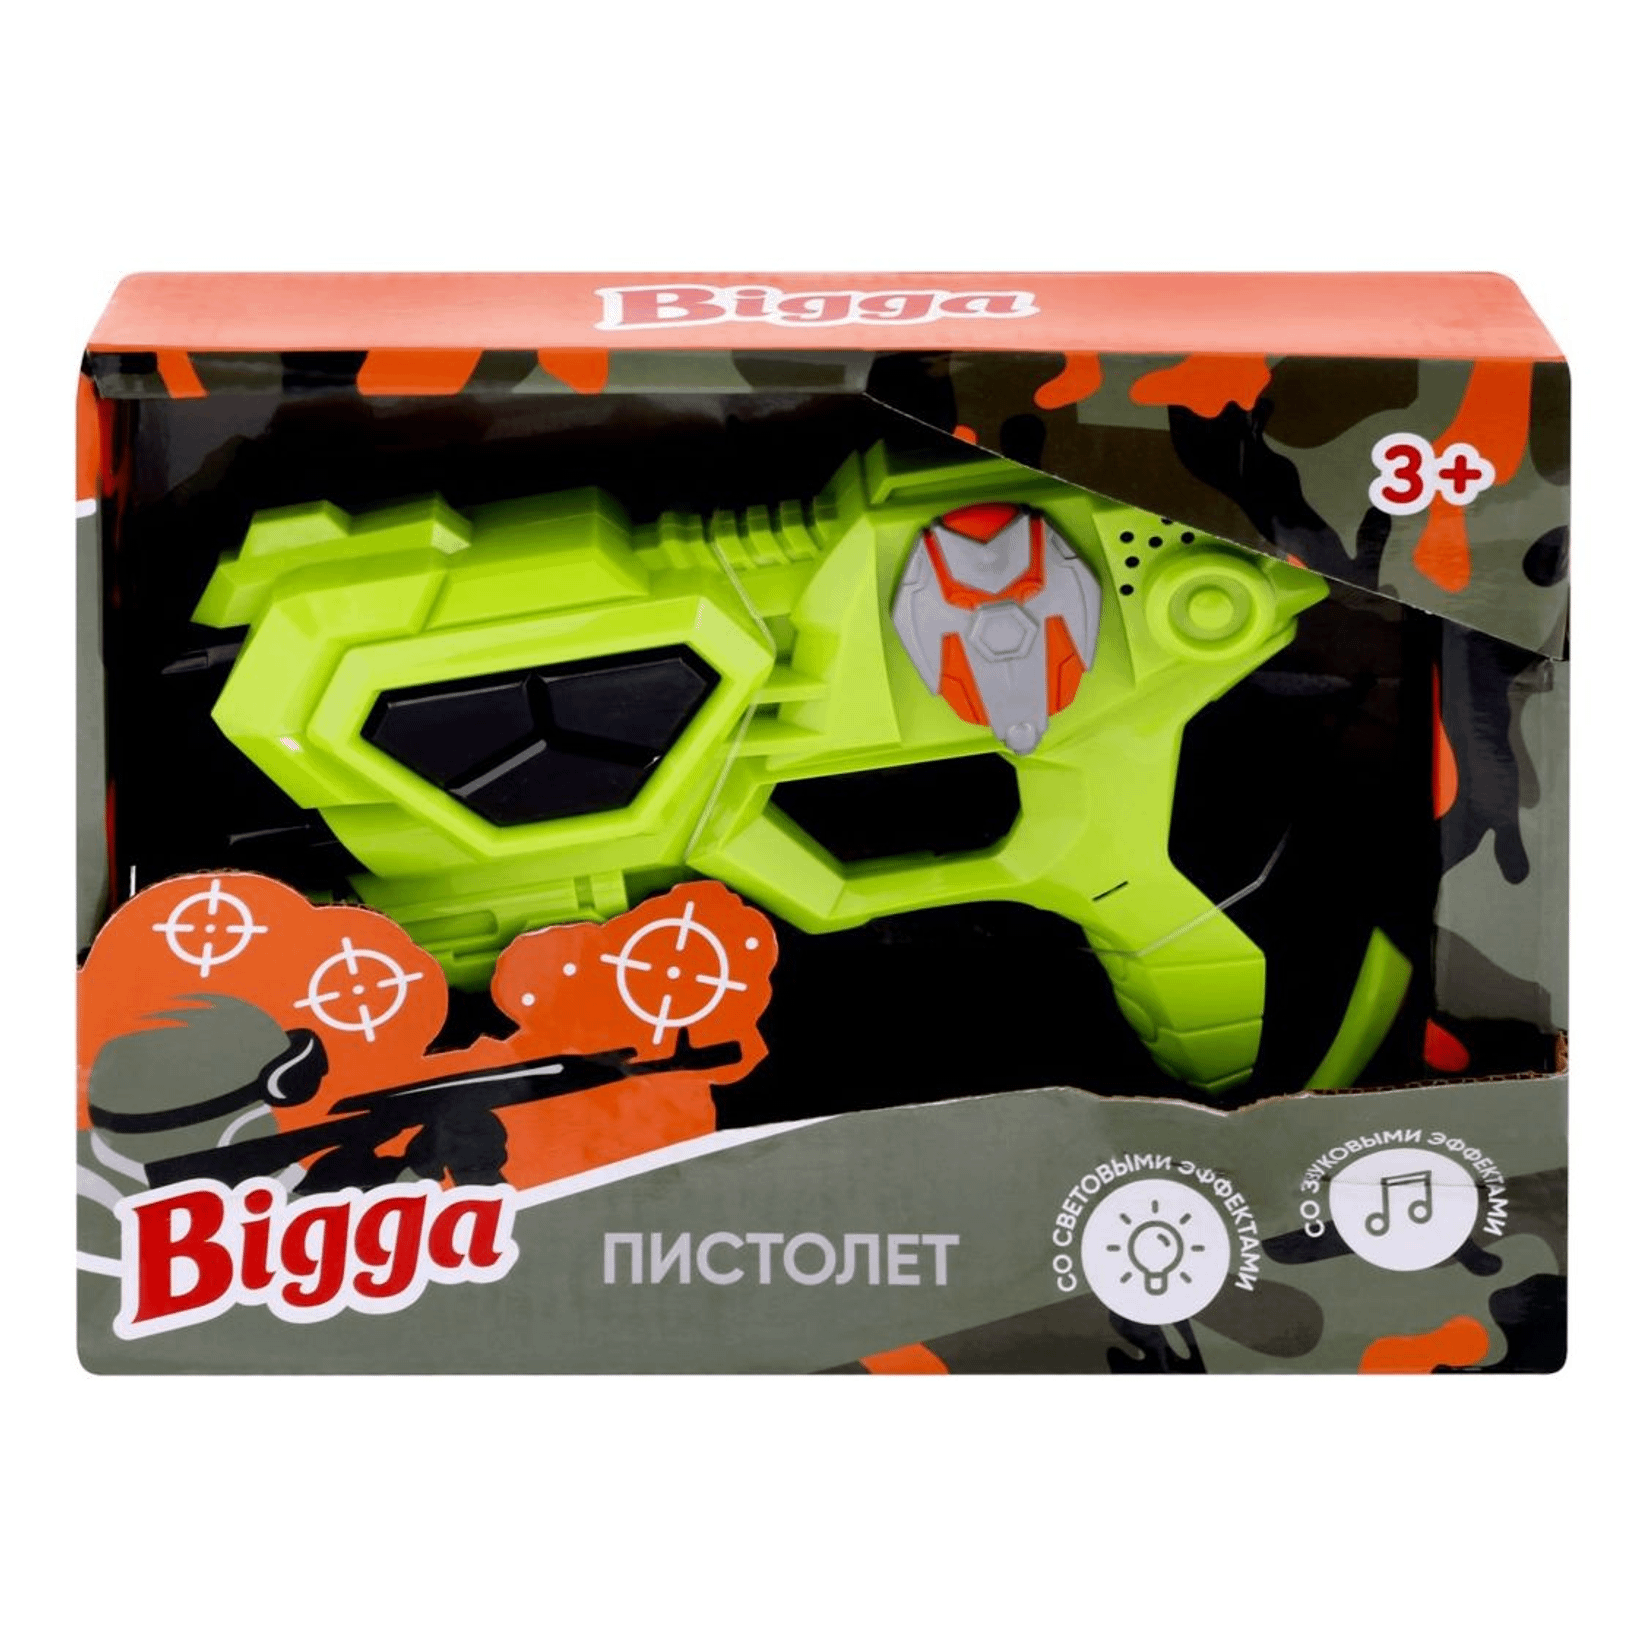 Пистолет игрушечный со световыми и звуковыми эффектами Bigga игровой набор хома дома со звуковыми эффектами